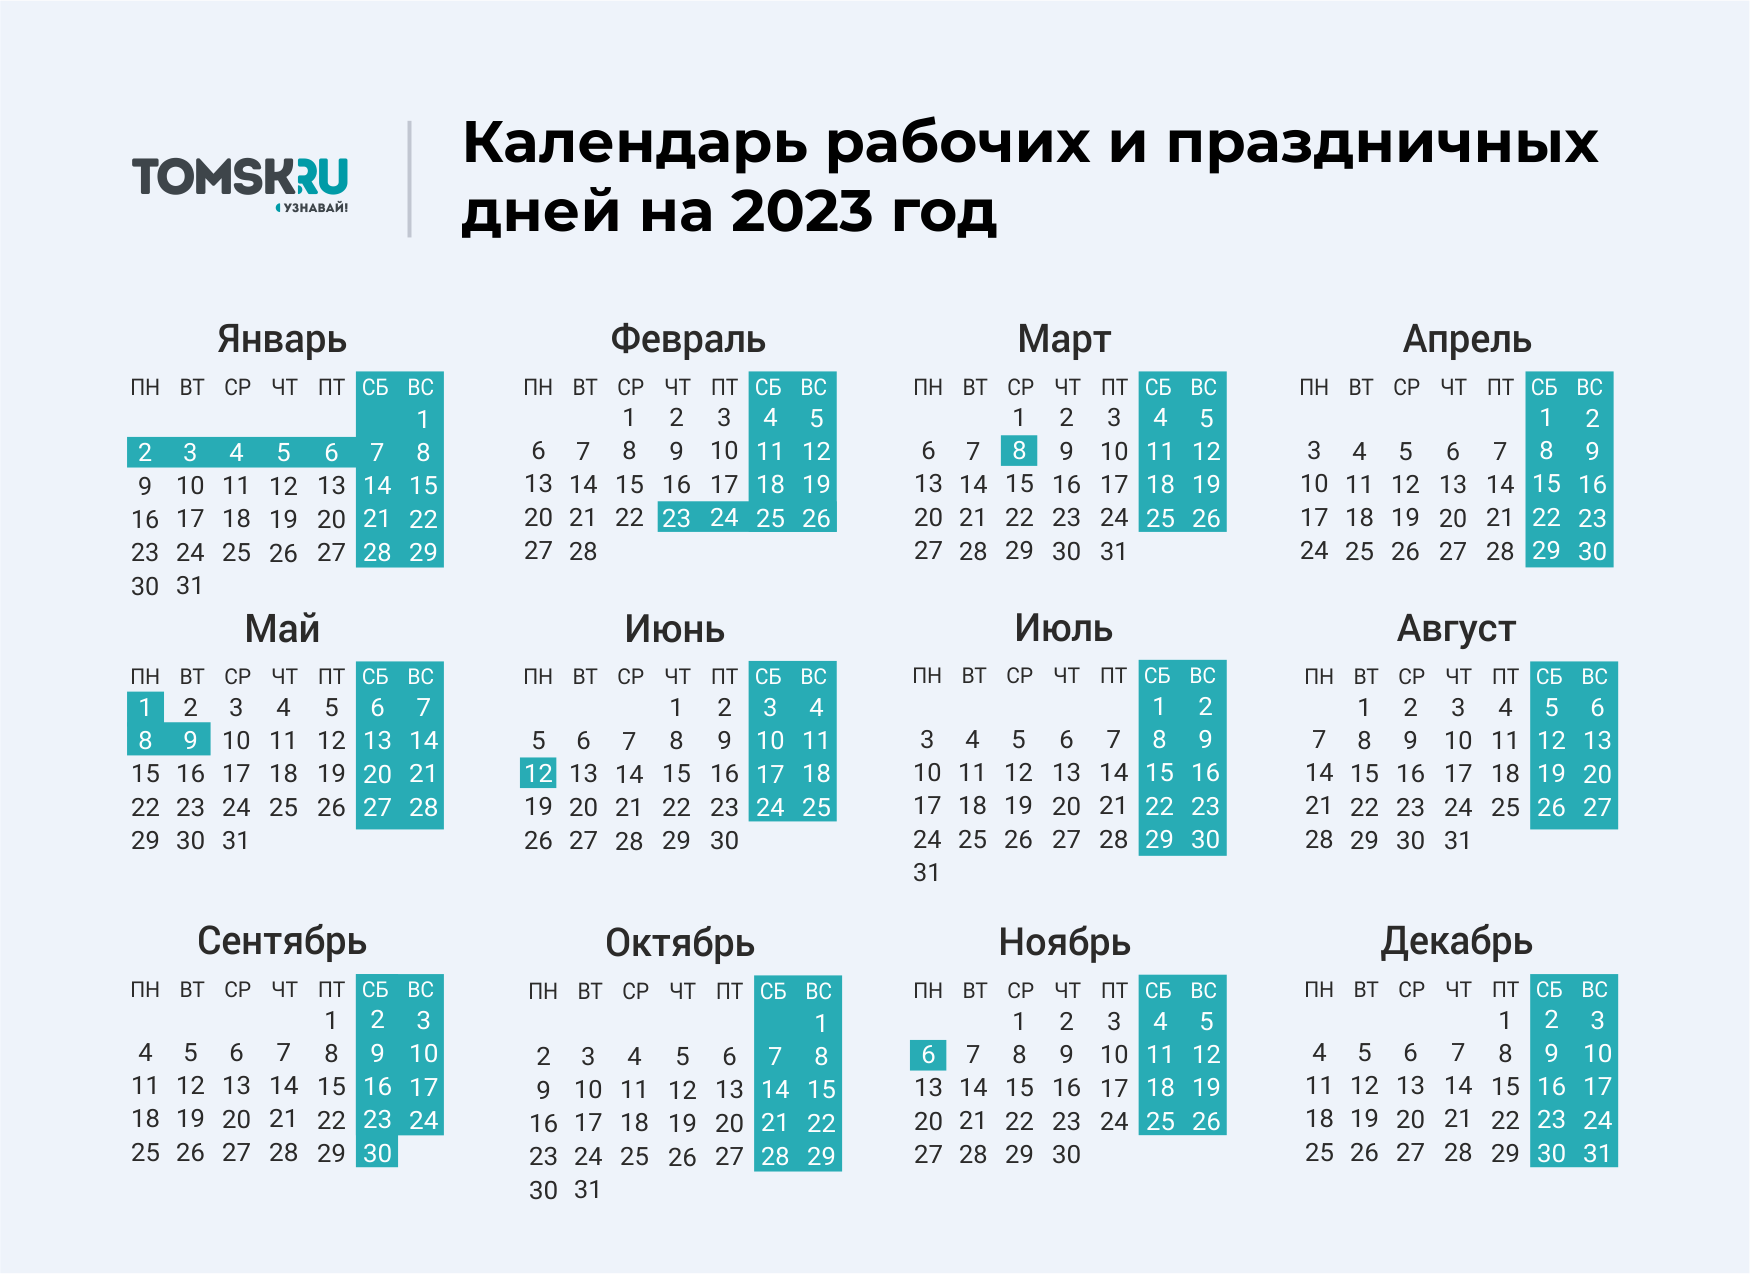 Можно в следующие выходные. Выходные дни в 2023 году в России календарь. Календарь выходных и праздничных дней на 2023 год в России. Календарь праздничных выходеыхв 2023 году. Календарь на 2023 год с праздниками и выходными выходные снизу.